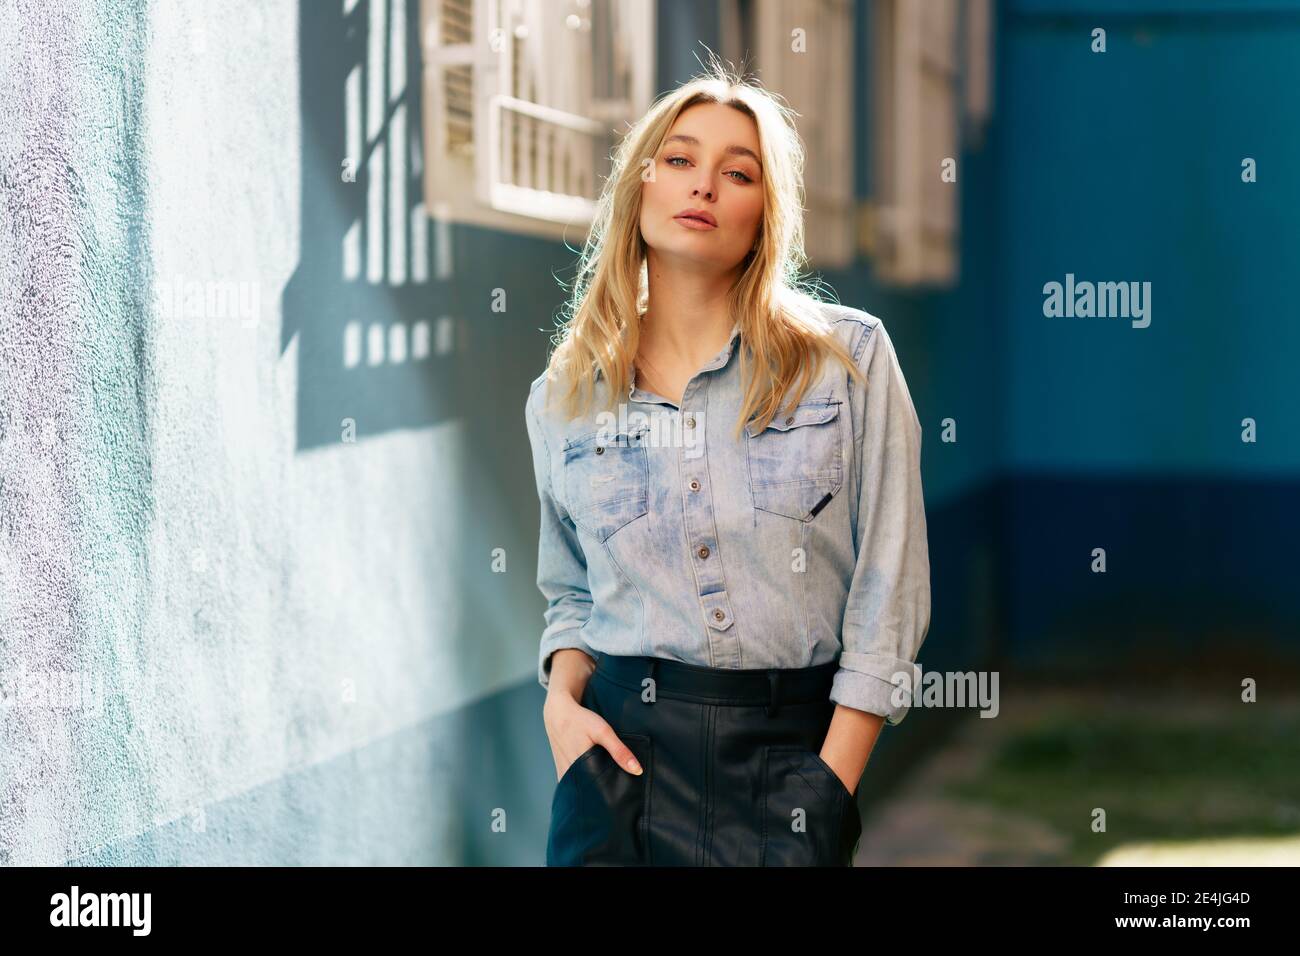 Blonde Frau trägt Jeanshemd und schwarzen Lederrock in der Straße stehen  Stockfotografie - Alamy